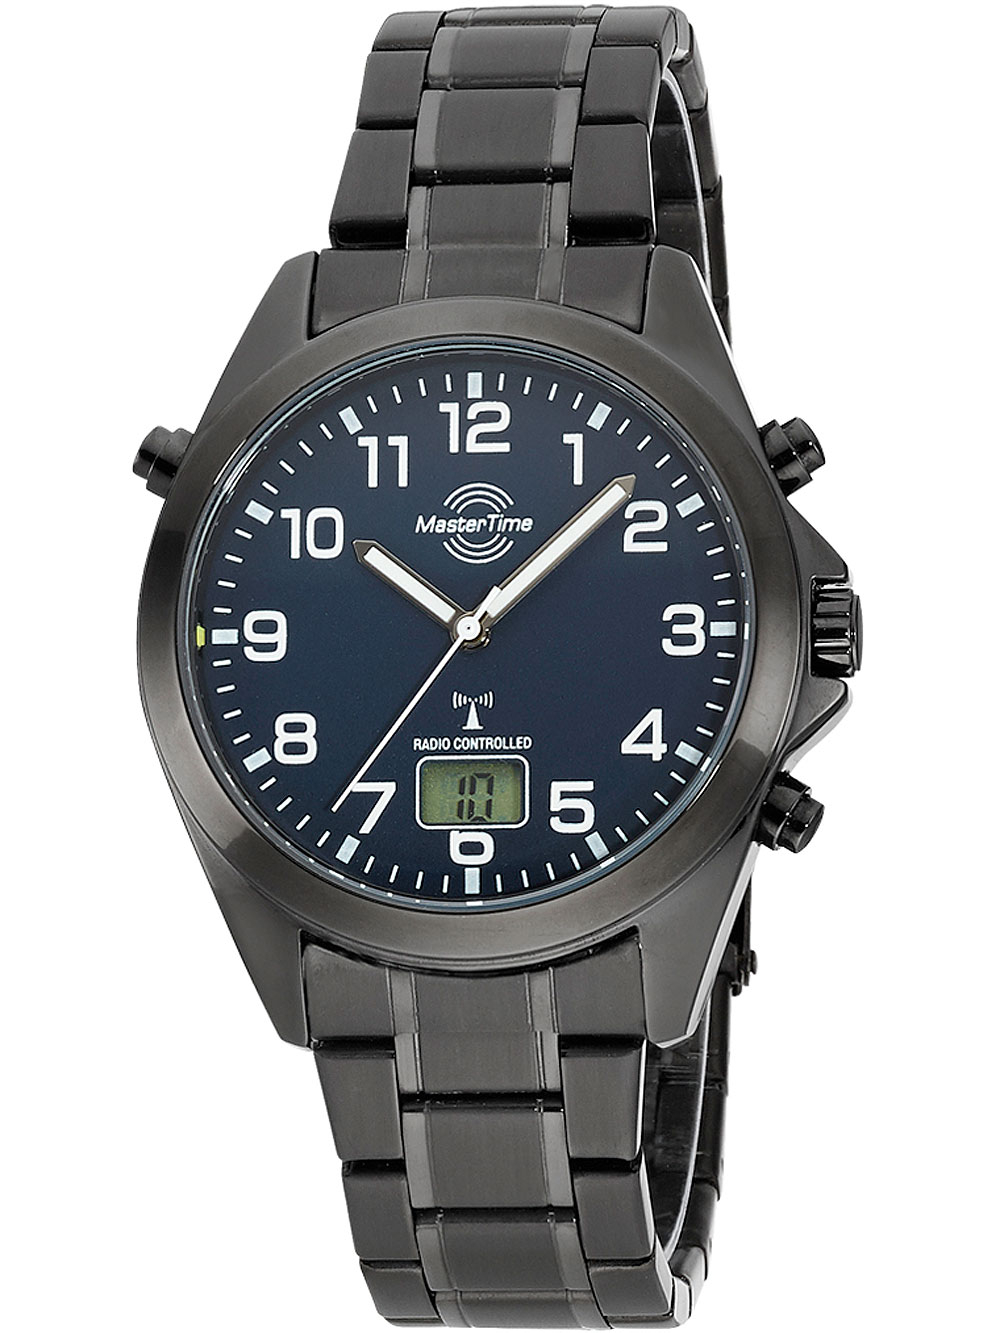 Наручные часы Time Master с Украине купить брендовые на закаленным отзывы, стеклом цены в в часы ROZETKA: Киеве